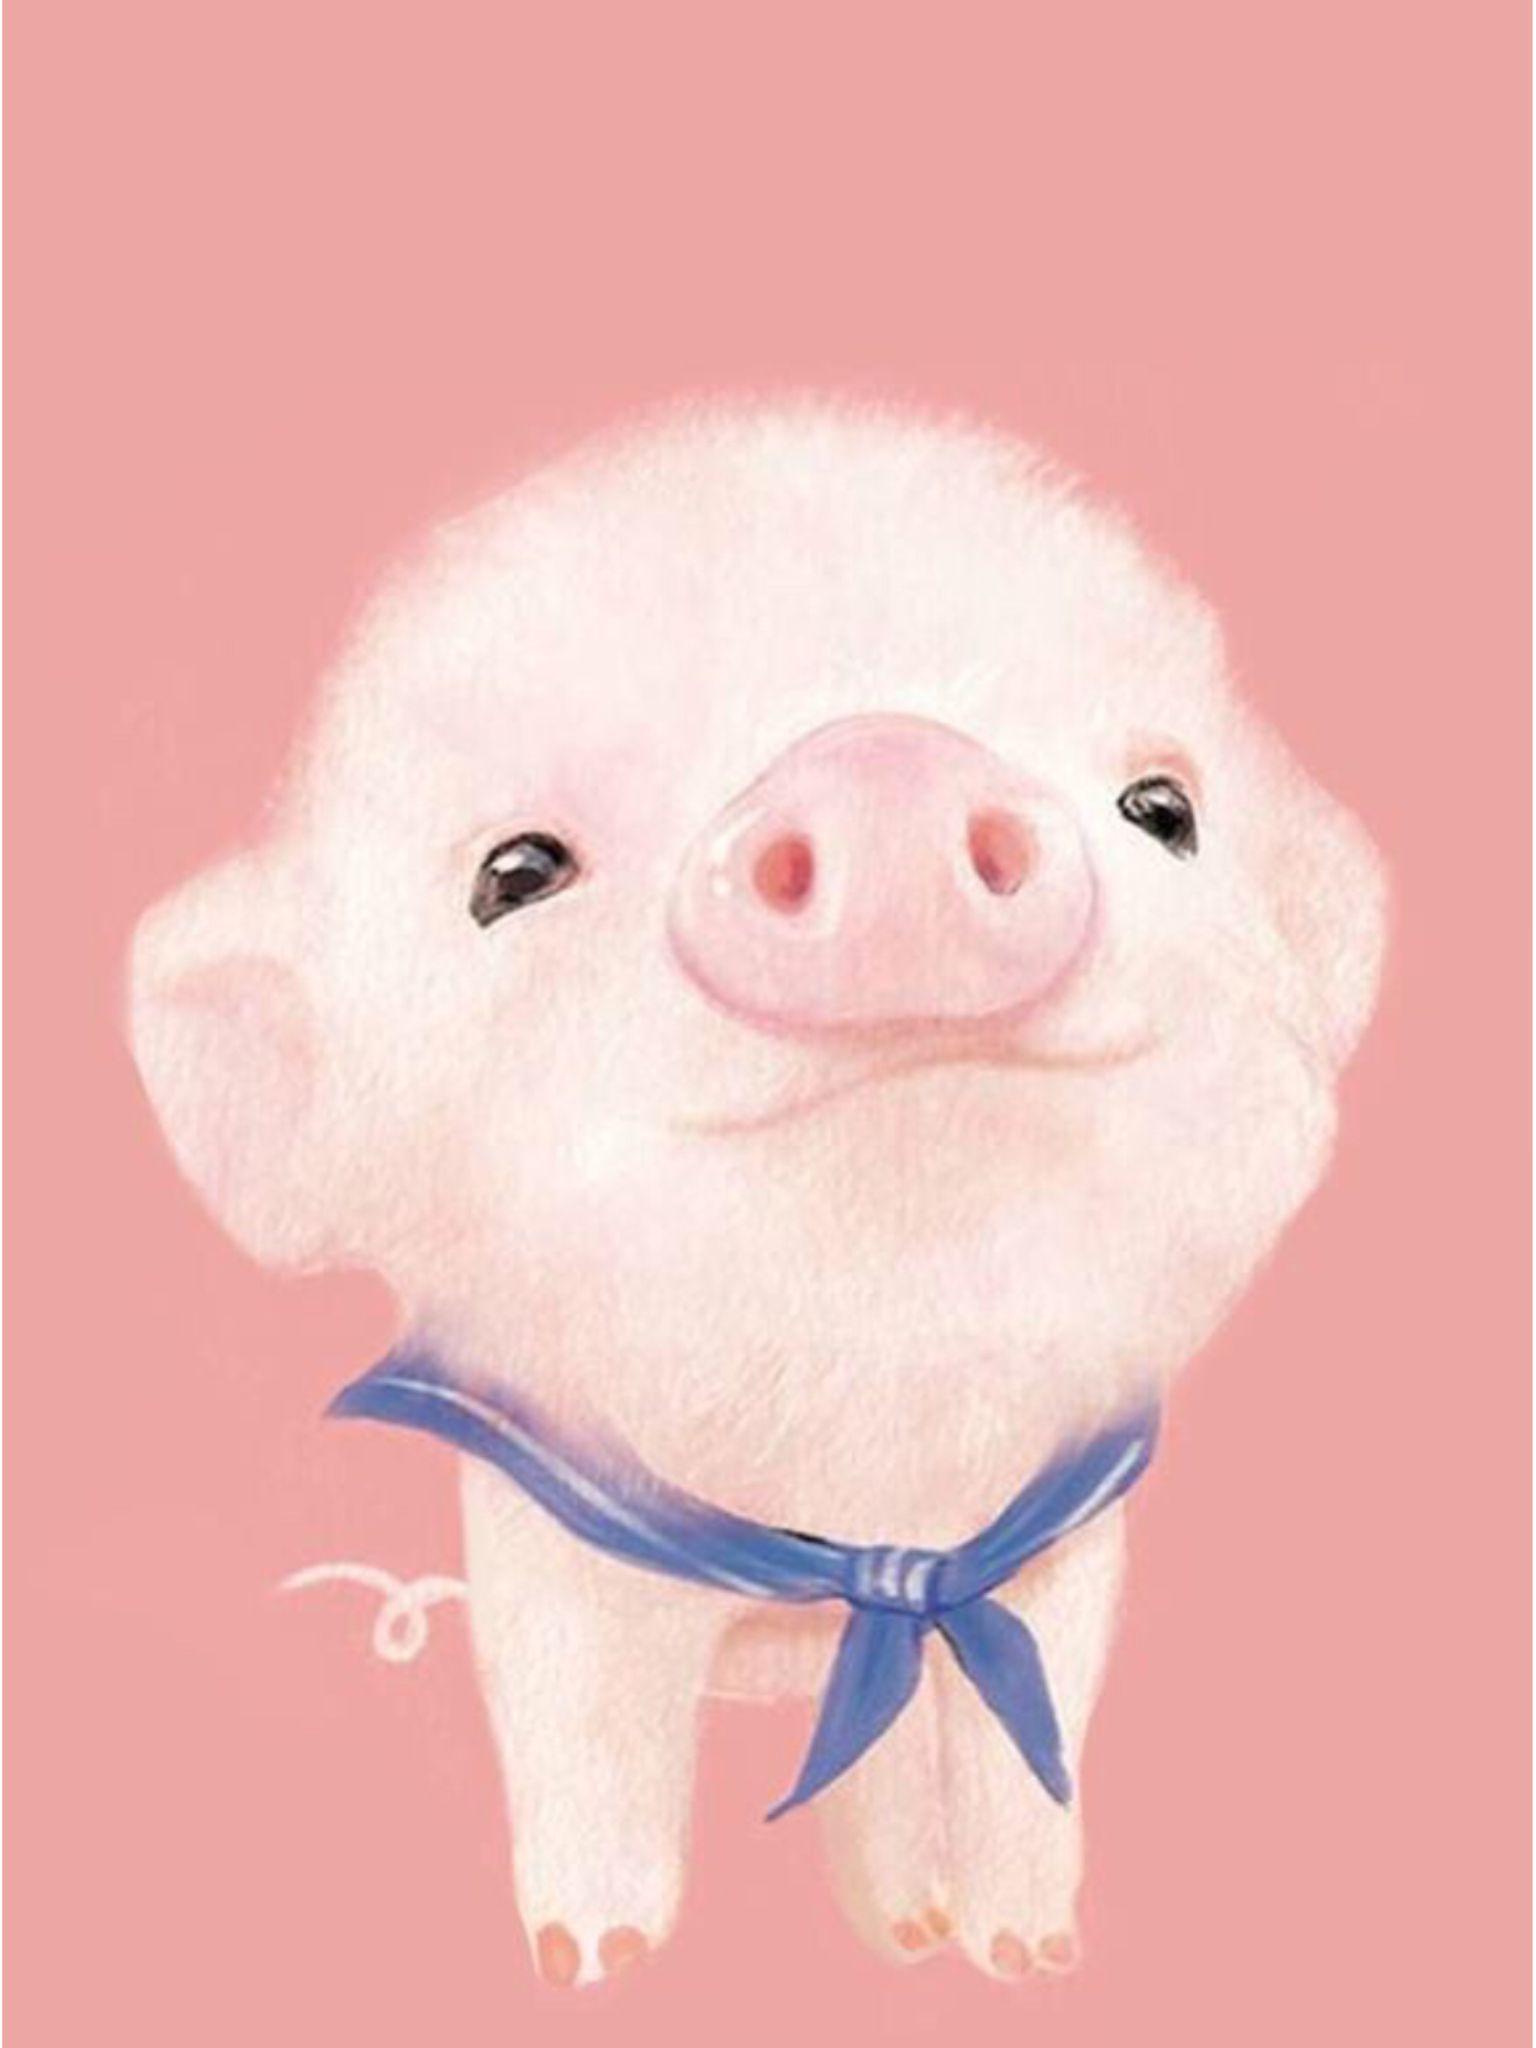 Cute pig wallpaper. Wallpaper. Pig wallpaper